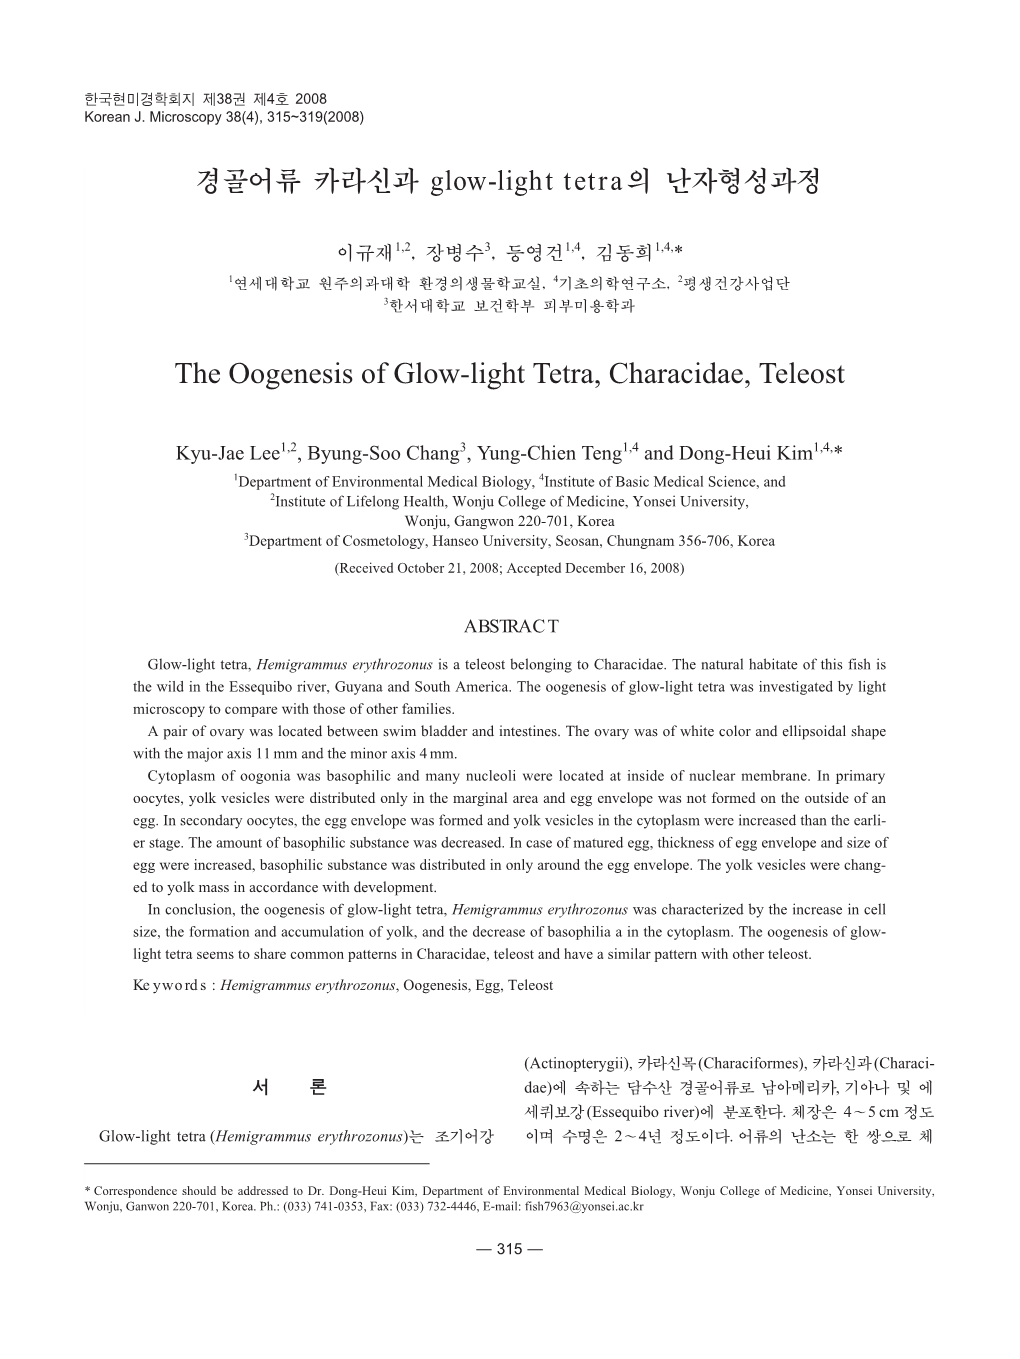 경골어류 카라신과 Glow-Light Tetra의 난자형성과정